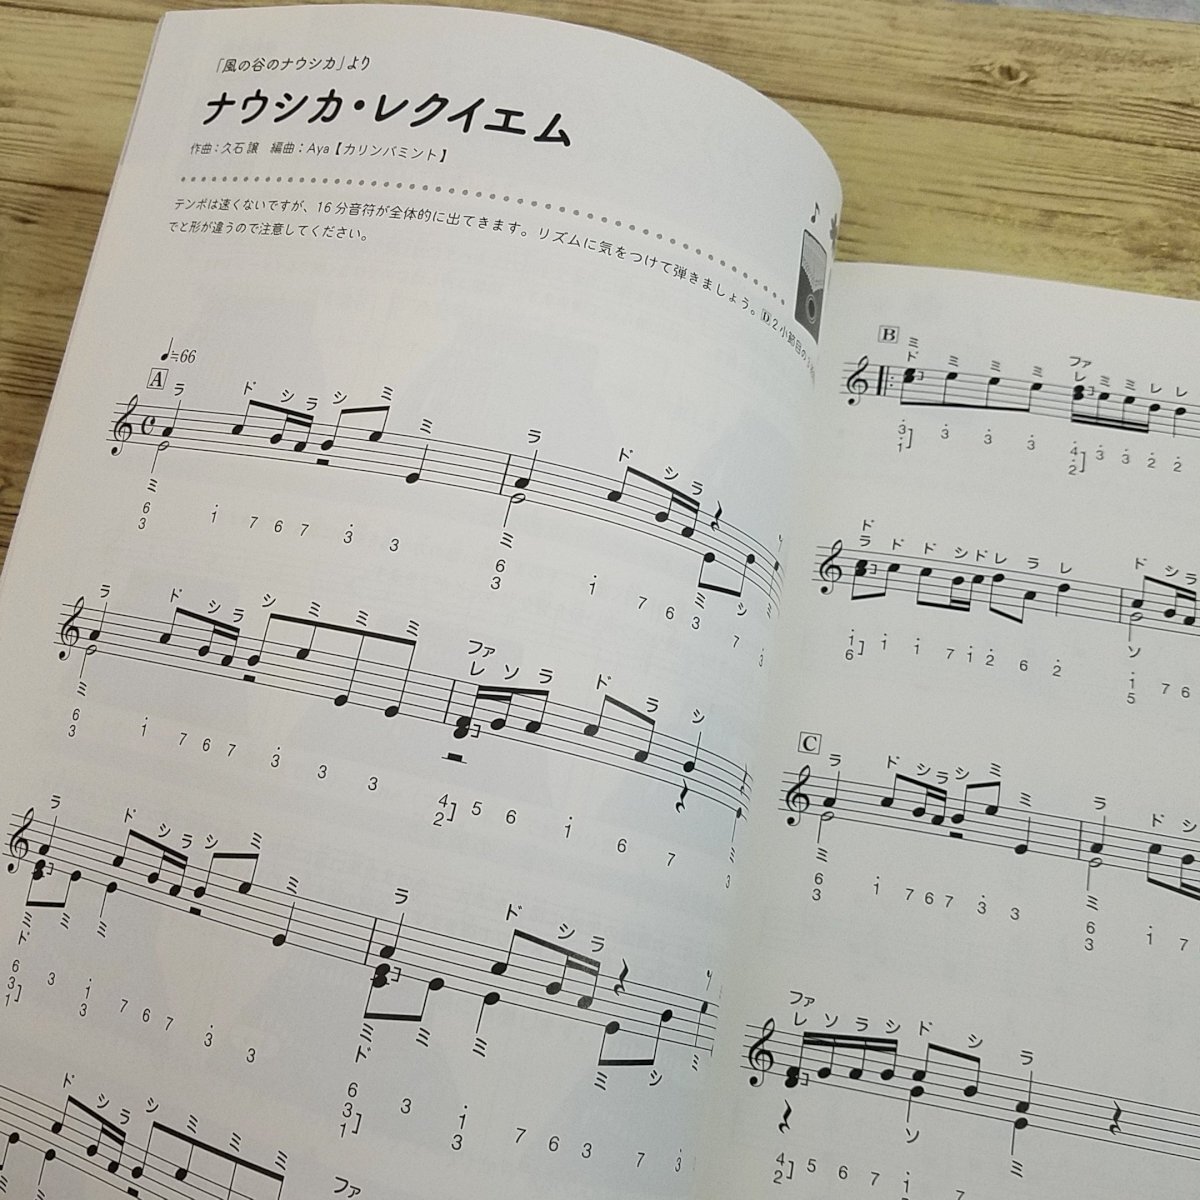  музыкальное сопровождение [ аккорд организовать . приятный айва китайская ba Studio Ghibli шедевр сборник ] 20 искривление Ghibli музыкальное сопровождение Nausicaa из способ ... до песни из аниме [ стоимость доставки 180 иен ]